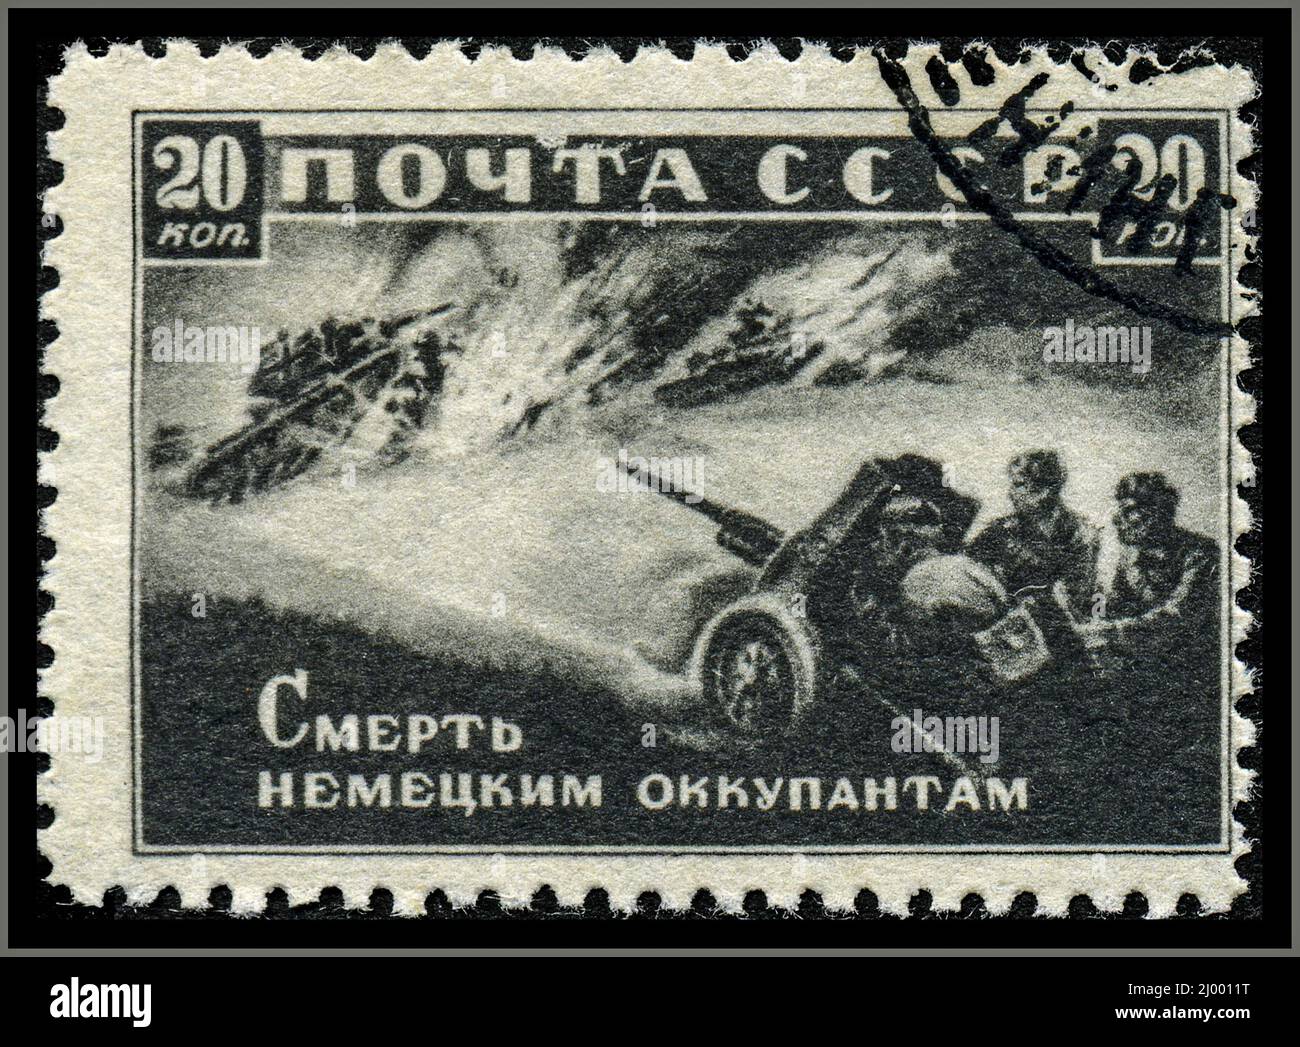 Timbre de guerre d'époque de l'artiste russe A. Shapiro de l'Union soviétique Banque D'Images